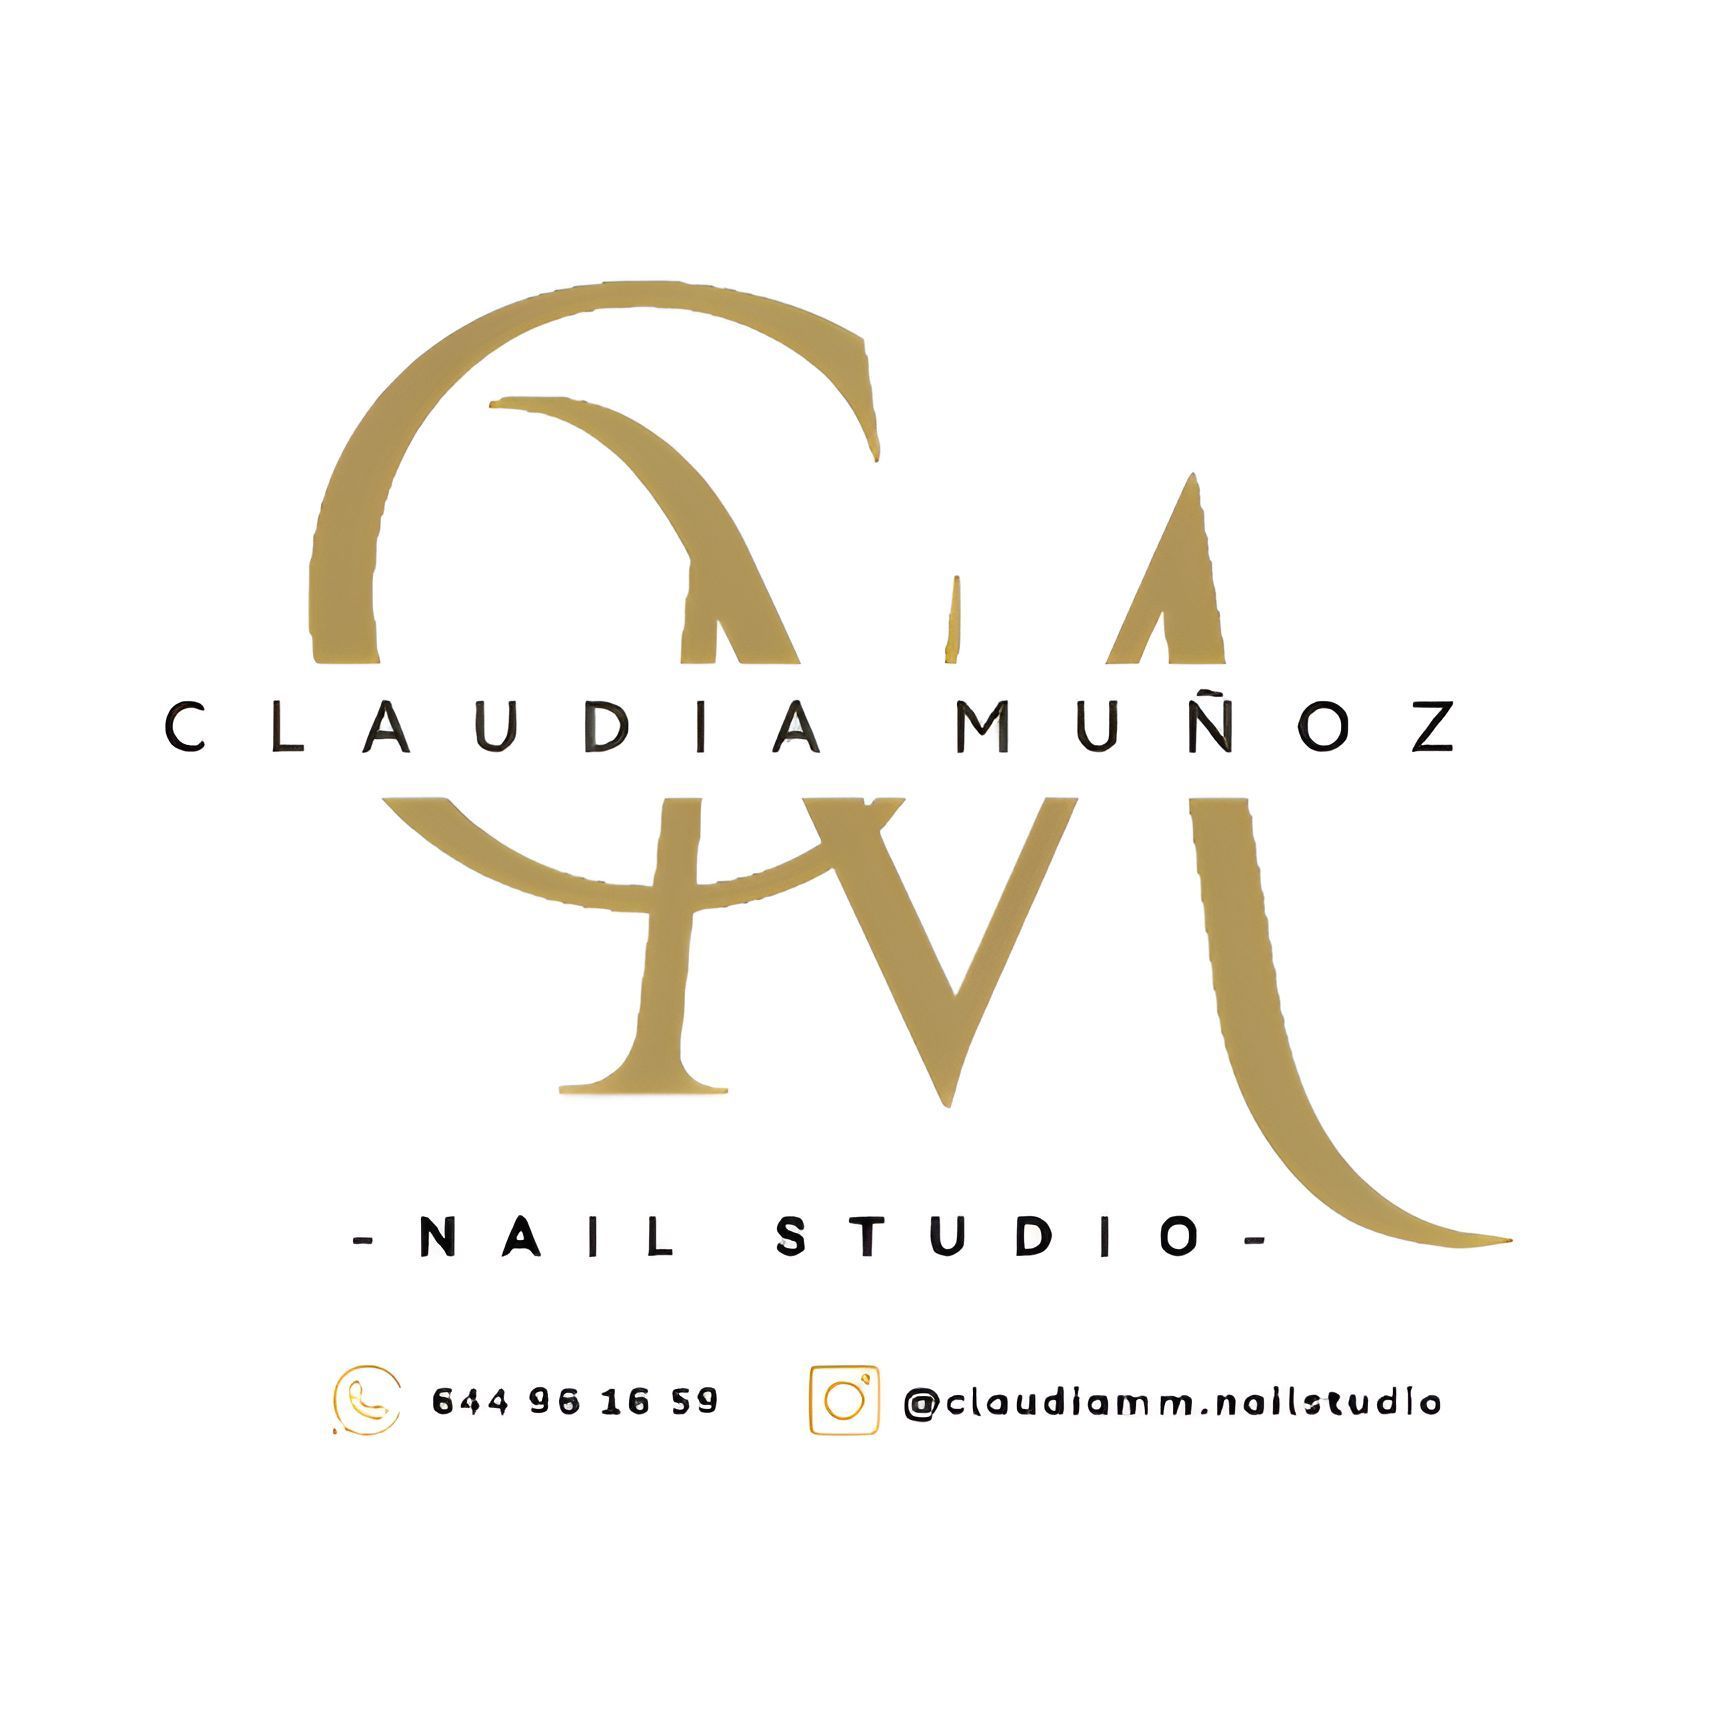 Claudia Muñoz Nail Studio, Calle Alcalá y Orti n16, 41500, Alcalá de Guadaíra